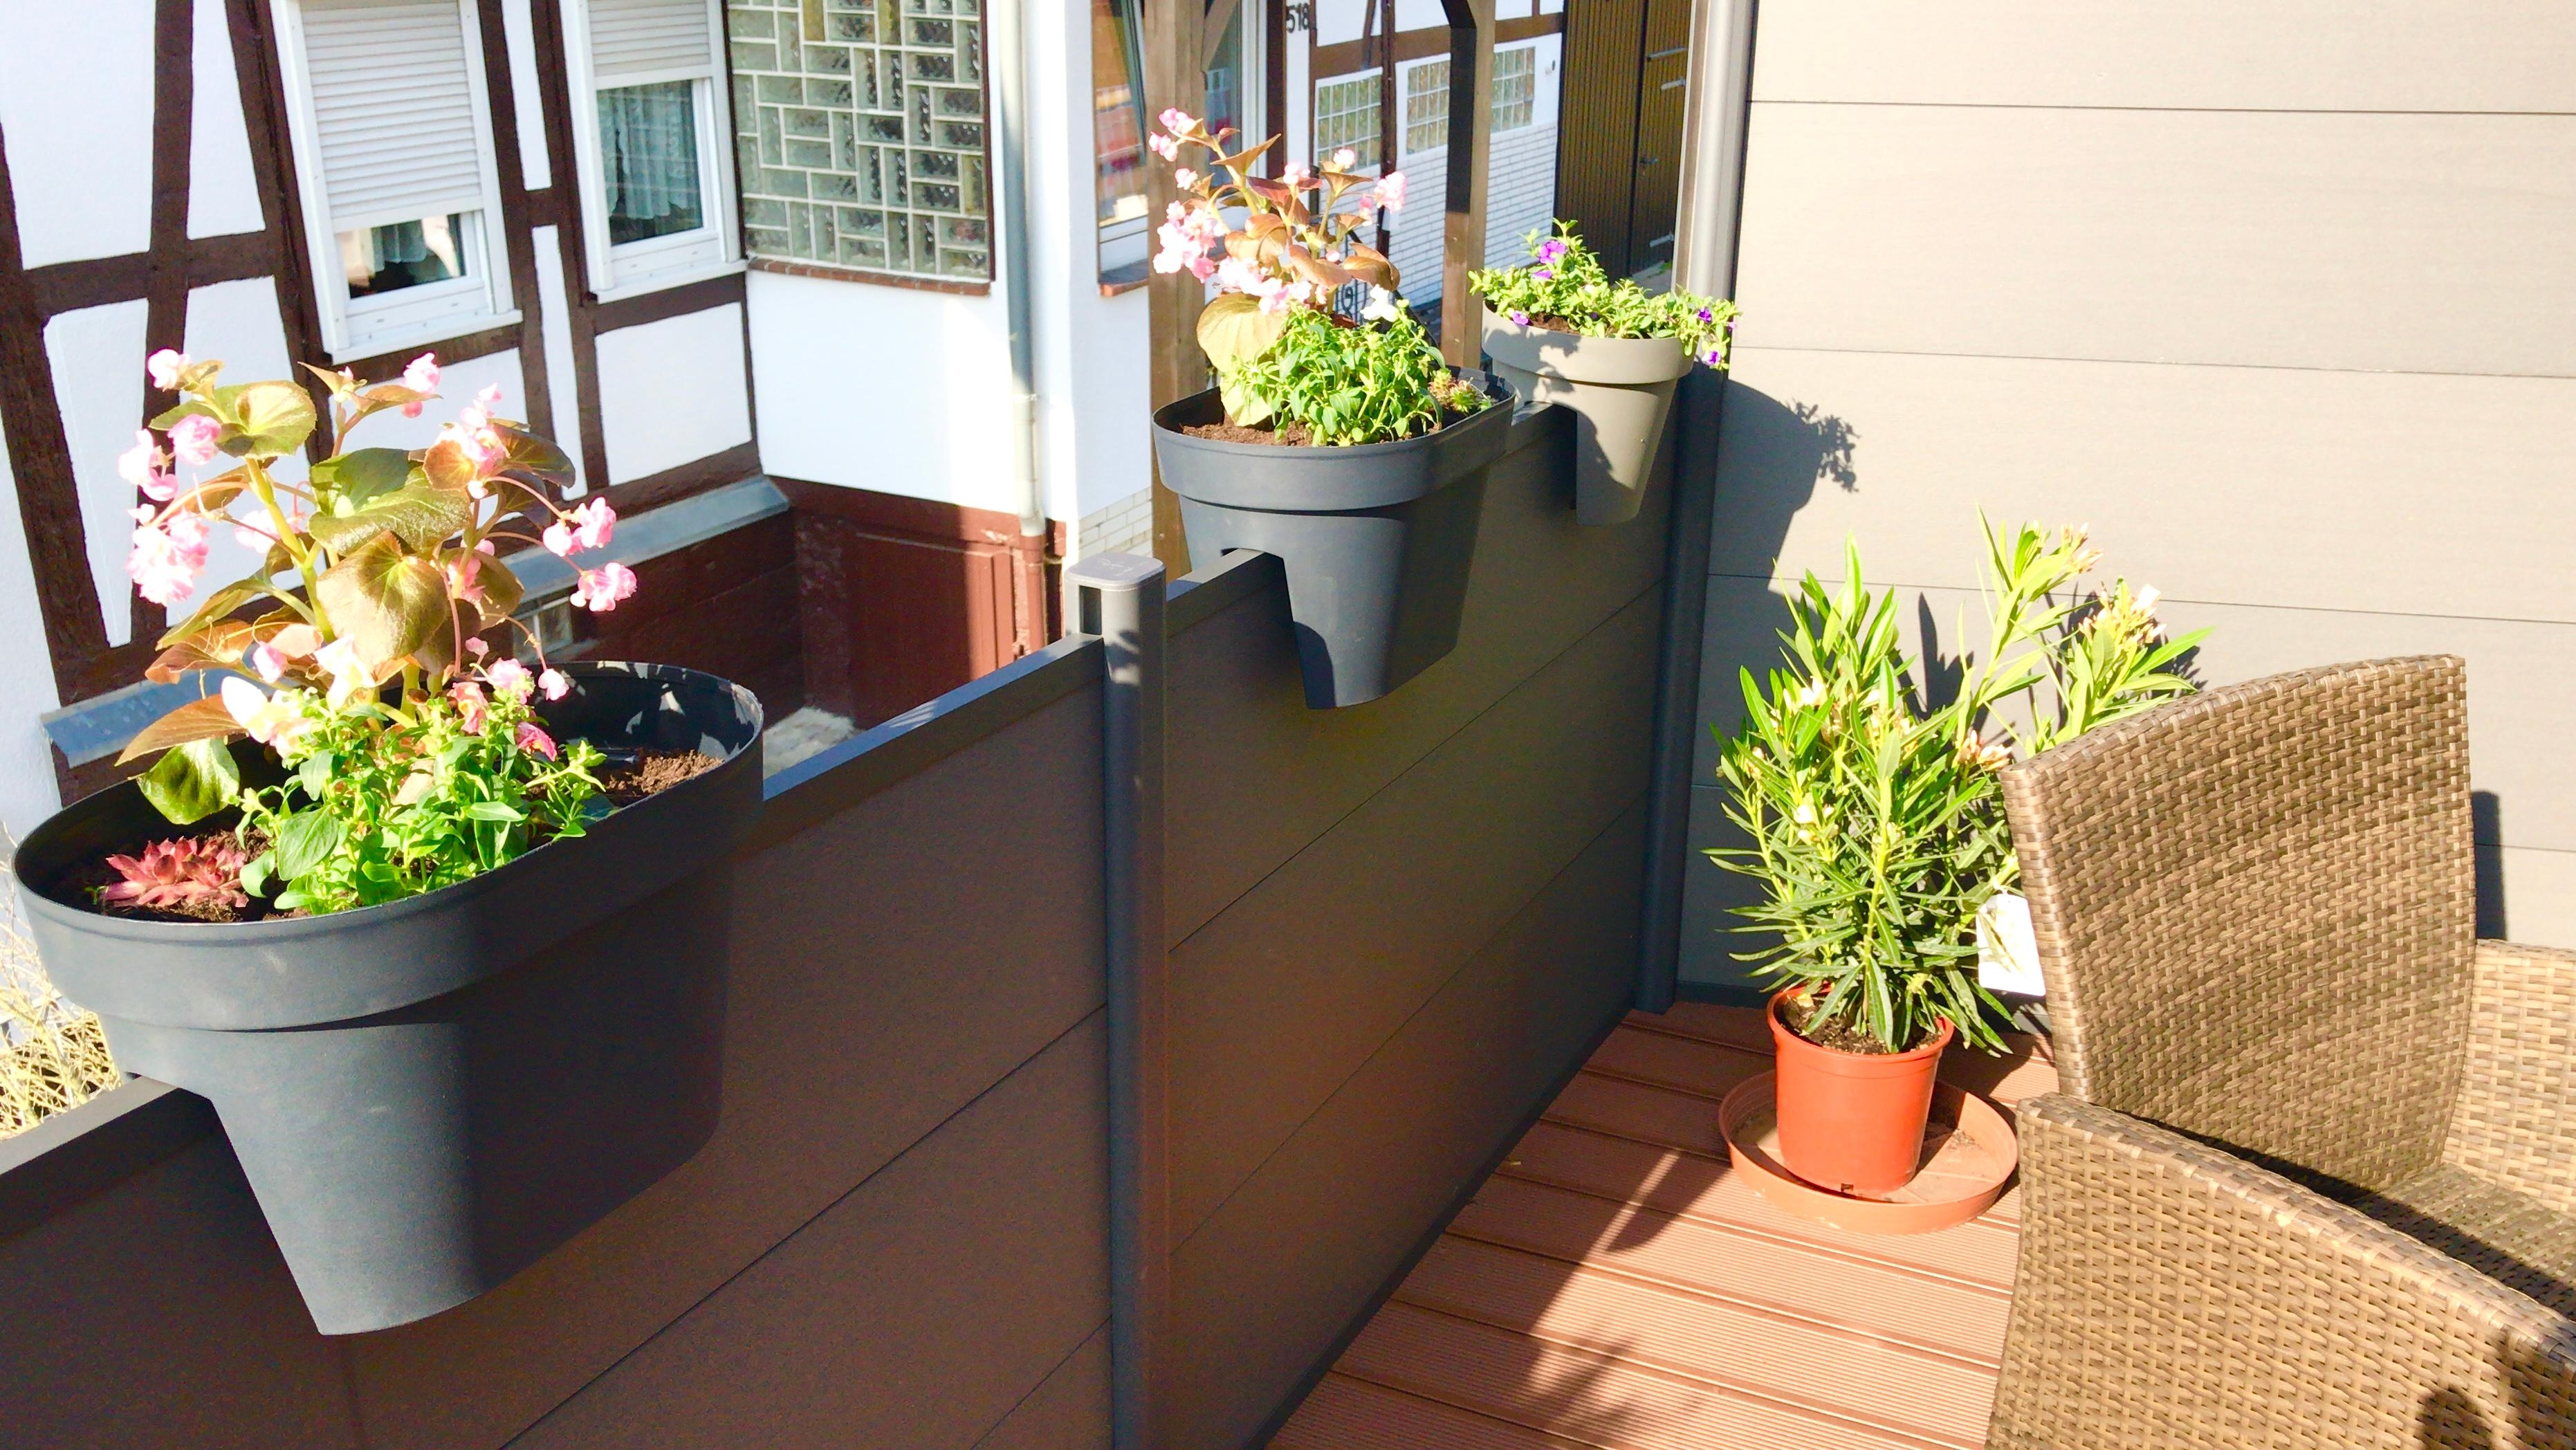 Kleiner Ausschnitt unseres Balkons #livingchallenge #outdoor #wannwirdesendlichwarm #urlaubsfeeling